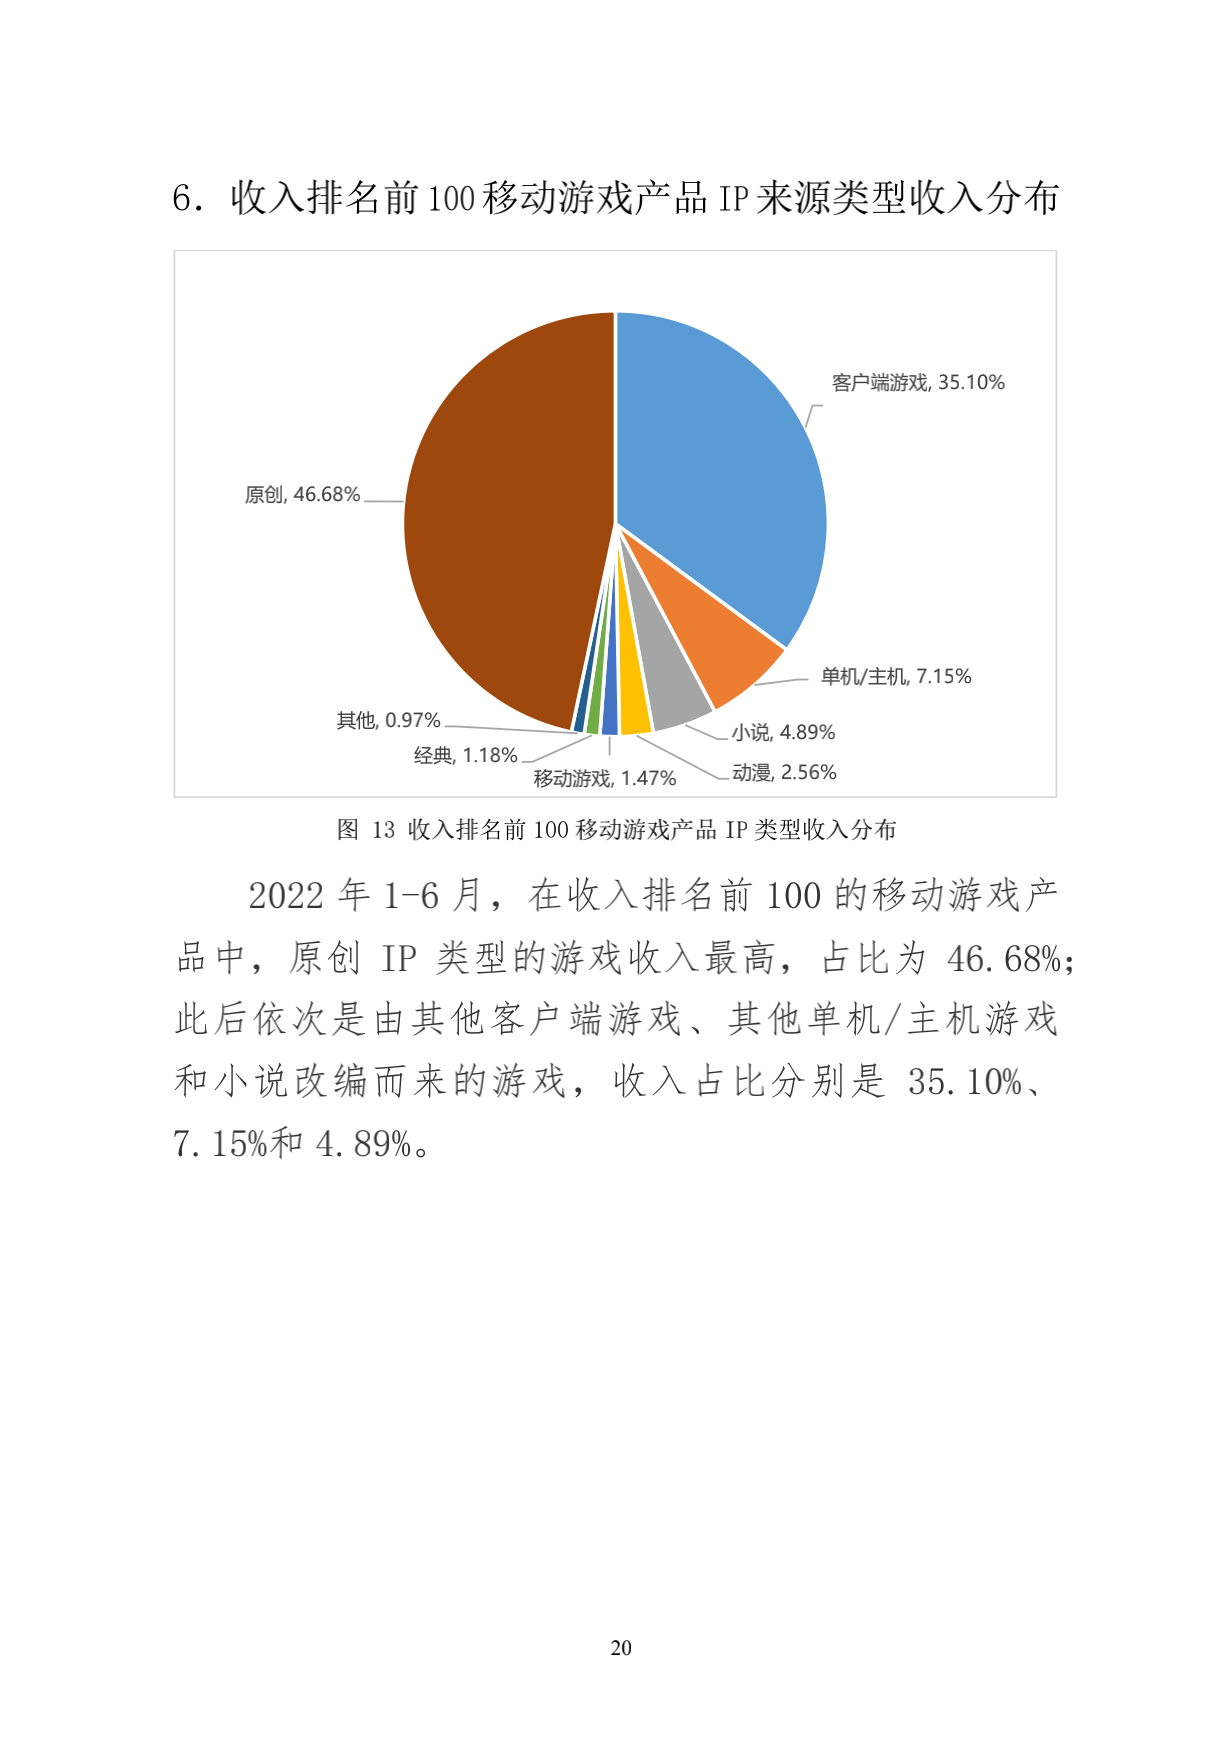 220714-2022年1-6月中国游戏产业报告_28